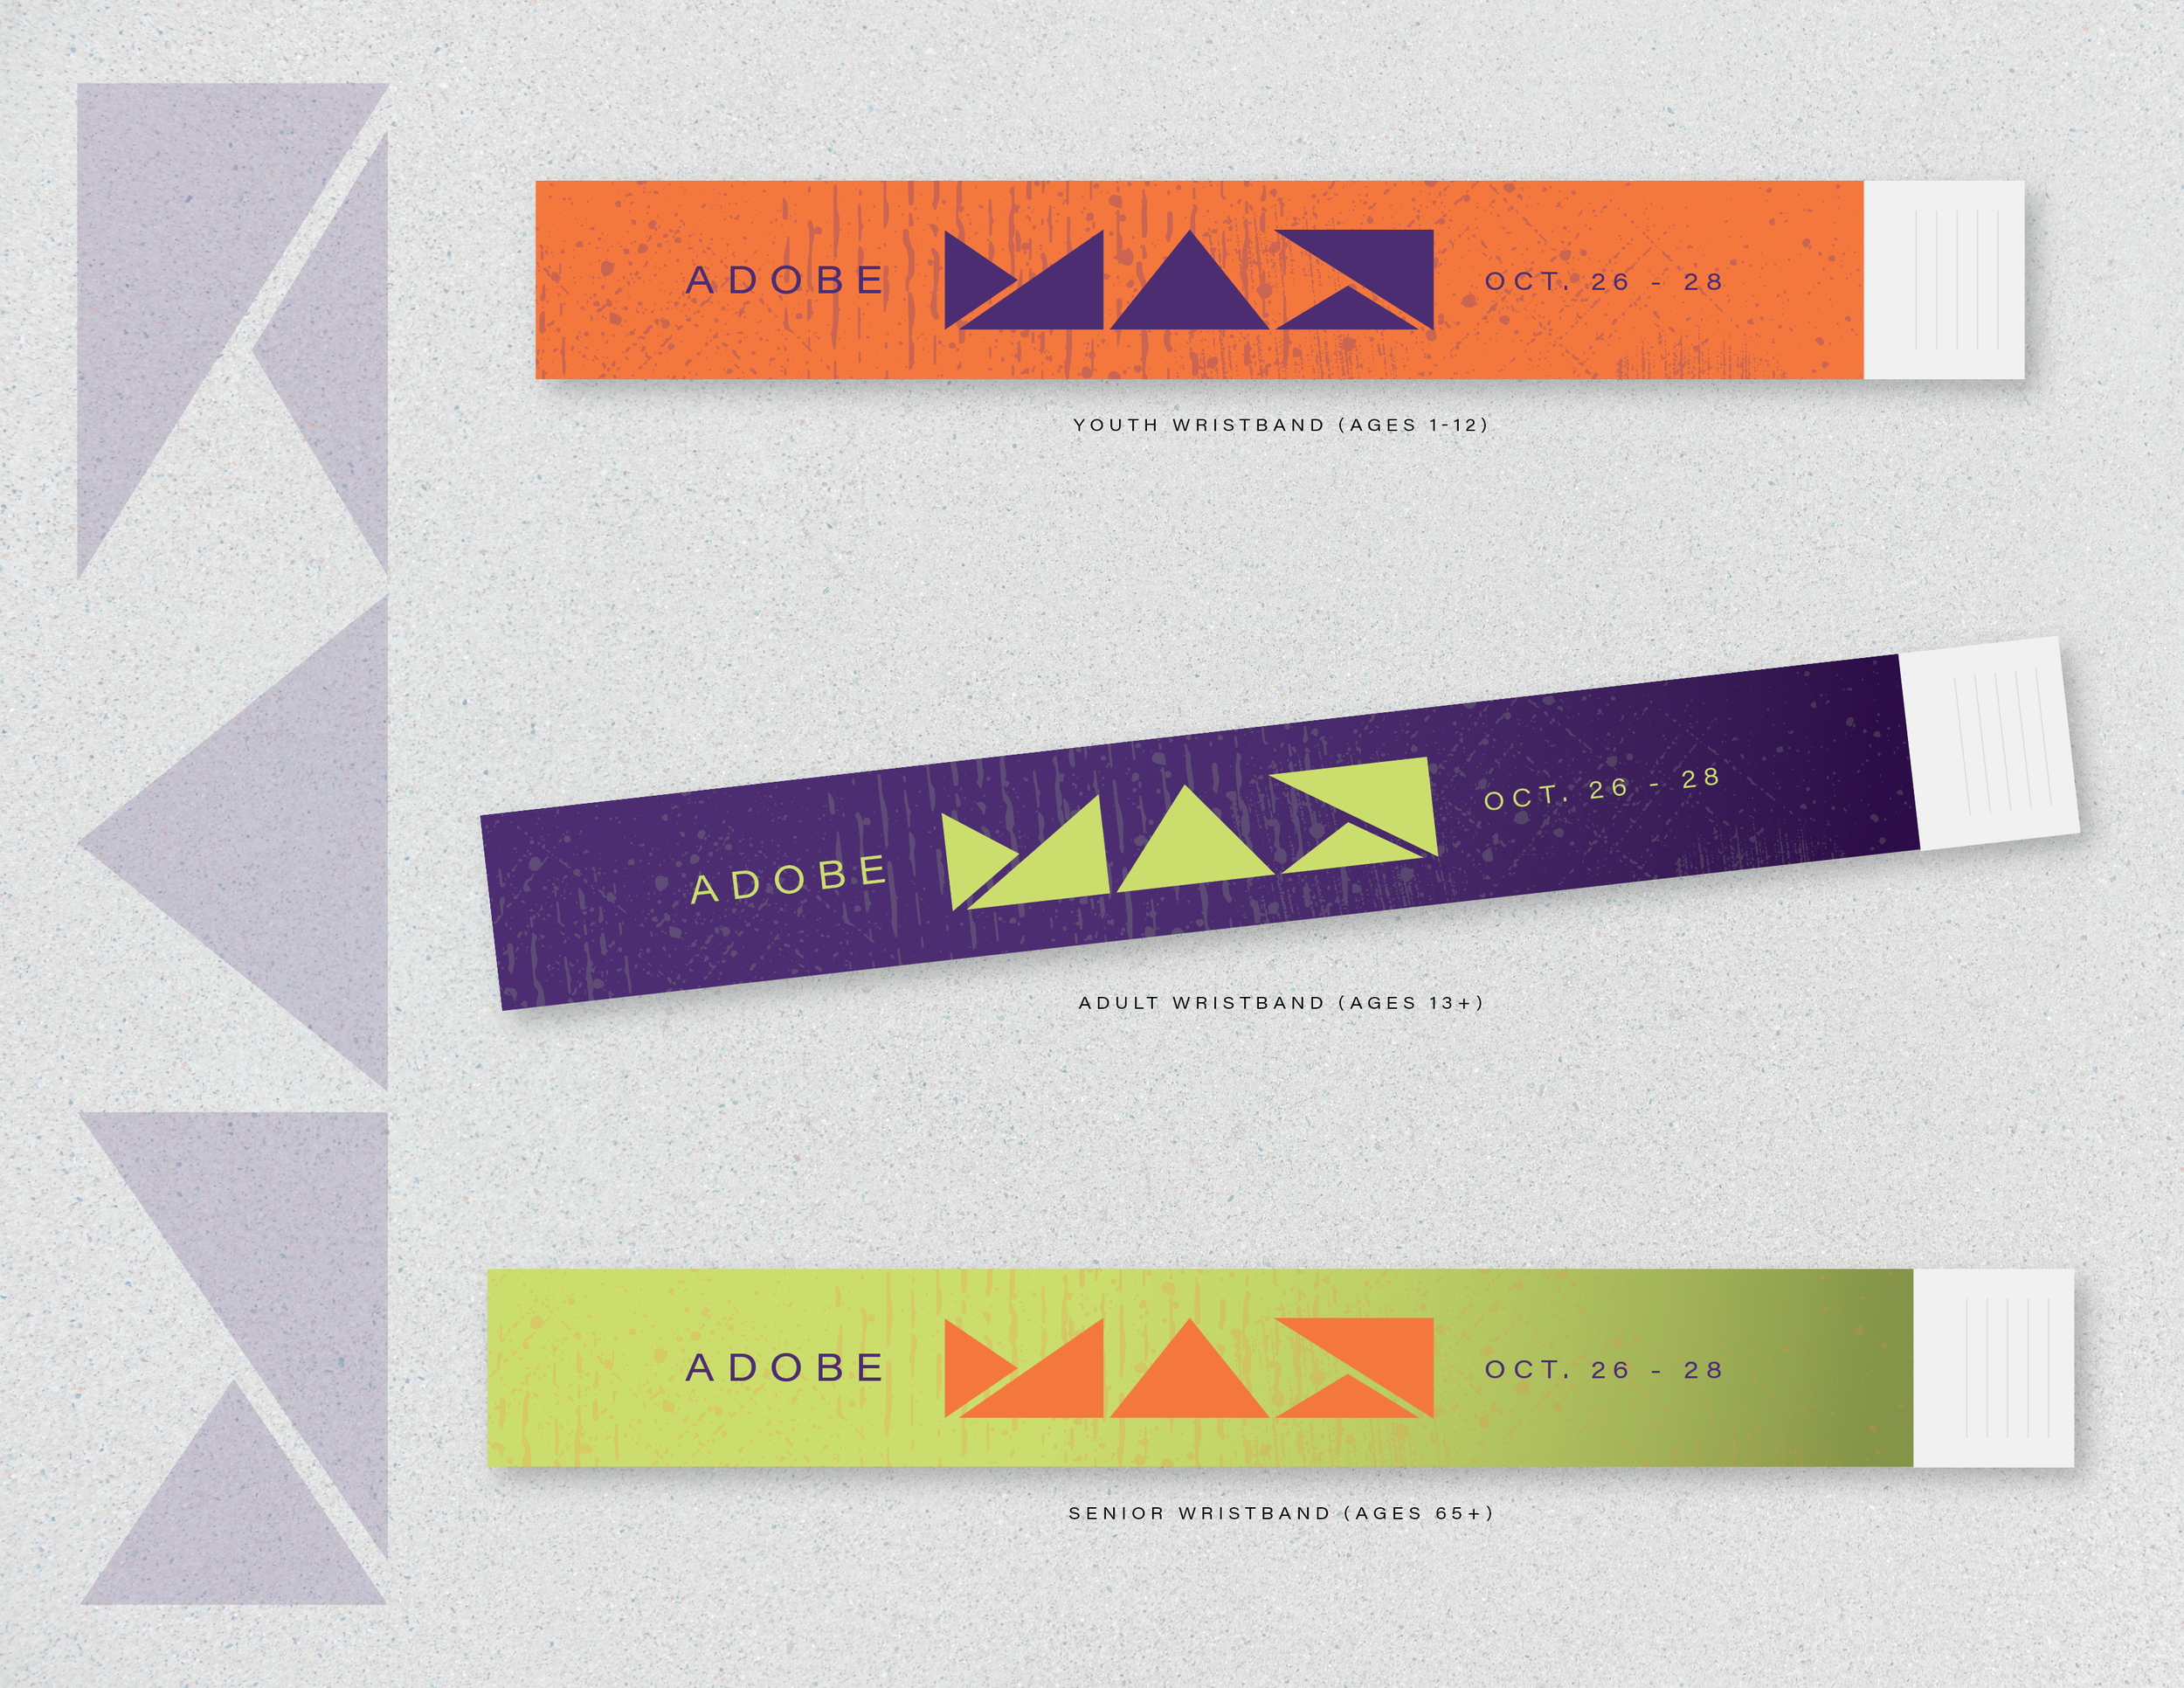 adobe max wristbands